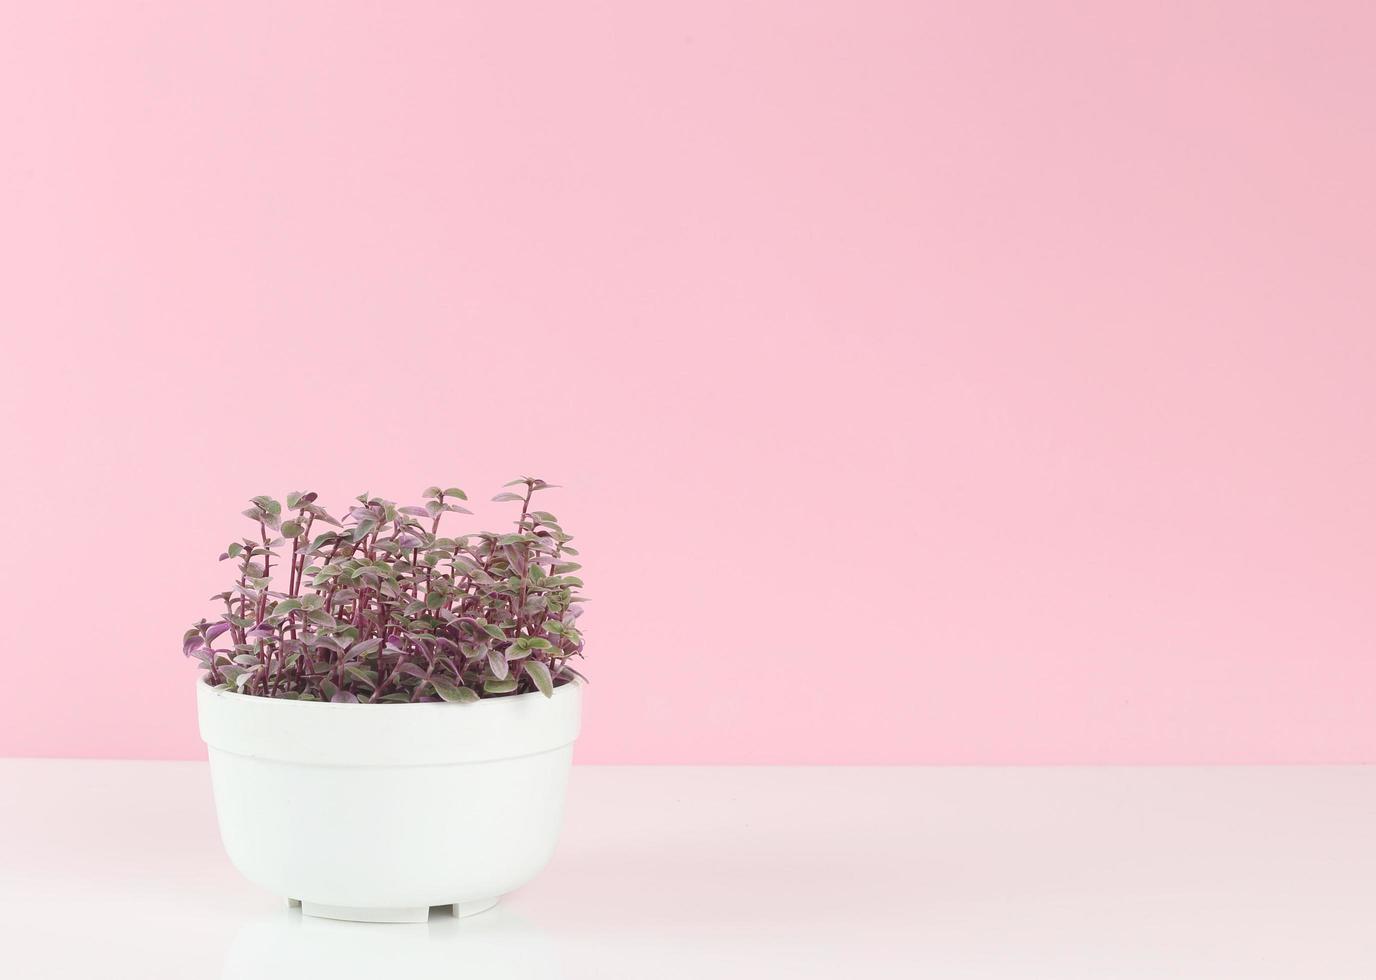 bellissimo vaso di piante su bianco su sfondo rosa - festa della mamma - crescita delle piante - salva la terra foto